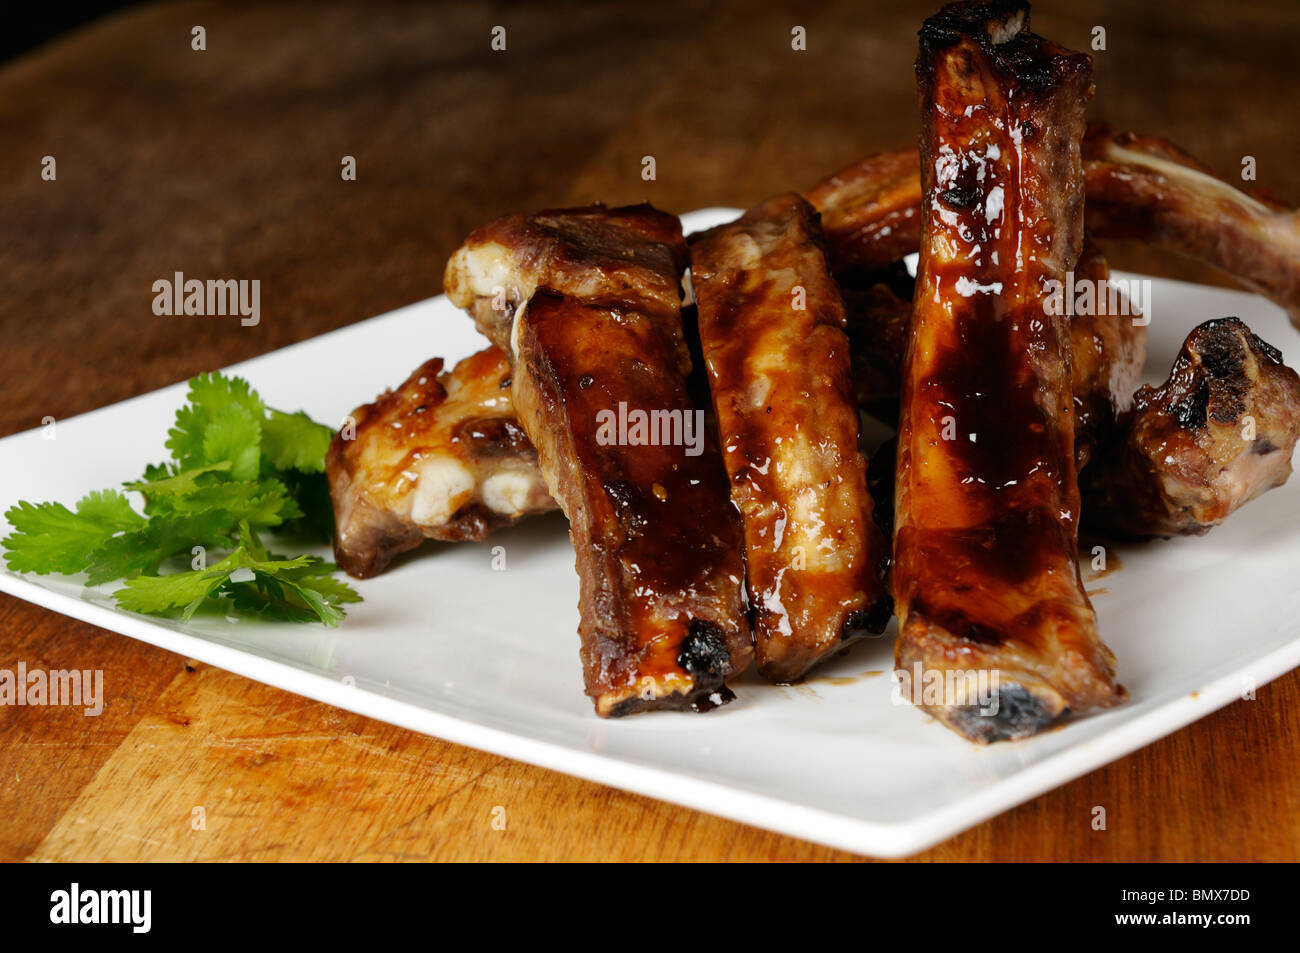 Stock photo des côtes levées de porc sur une assiette blanche. Banque D'Images